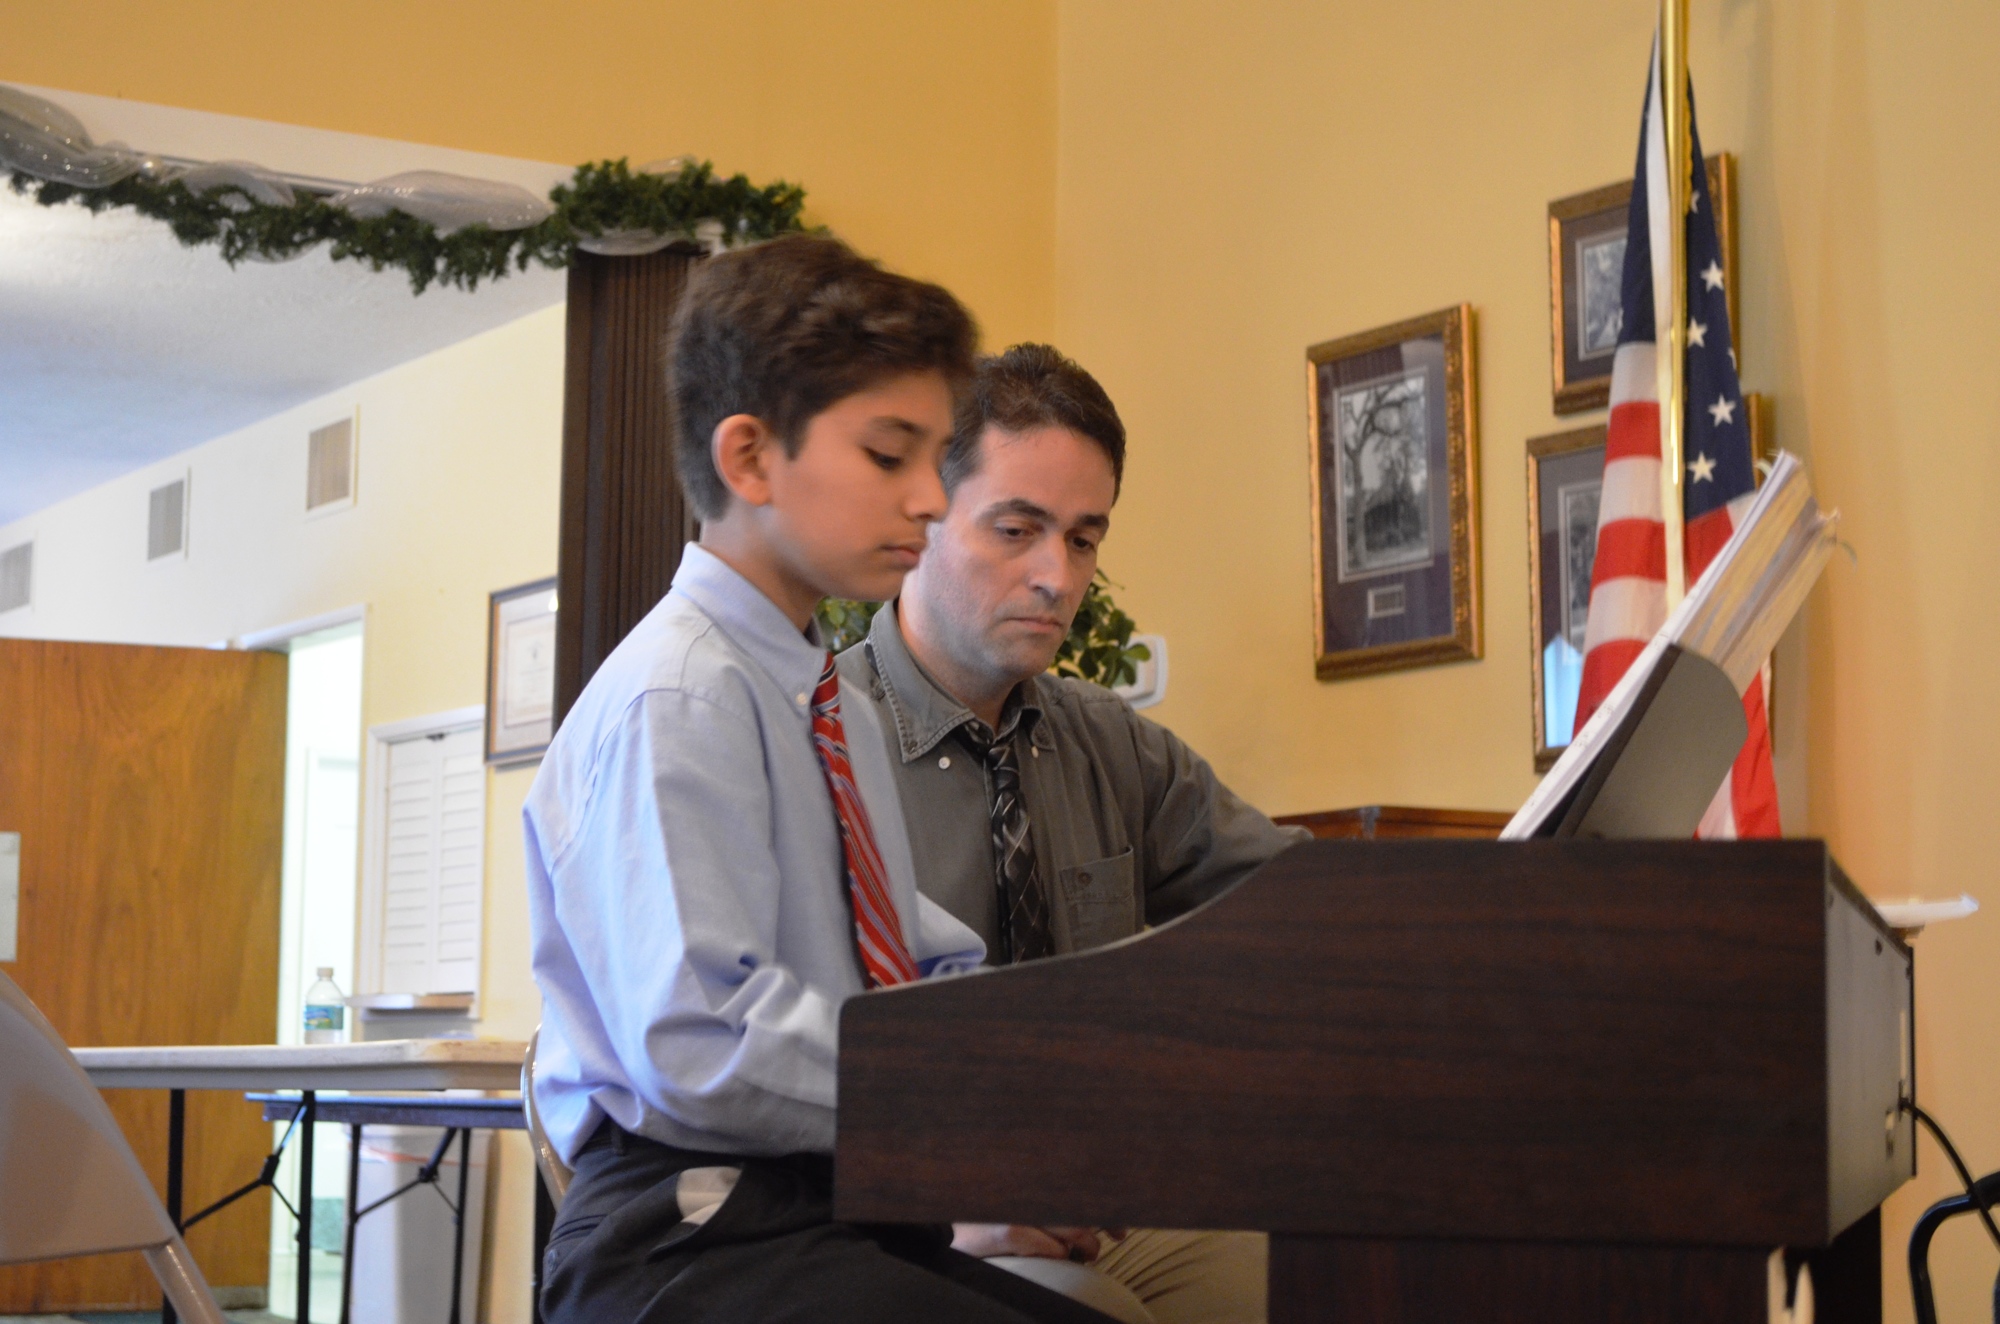 David Tafur plays piano as Damian Bonazzoli looks on.